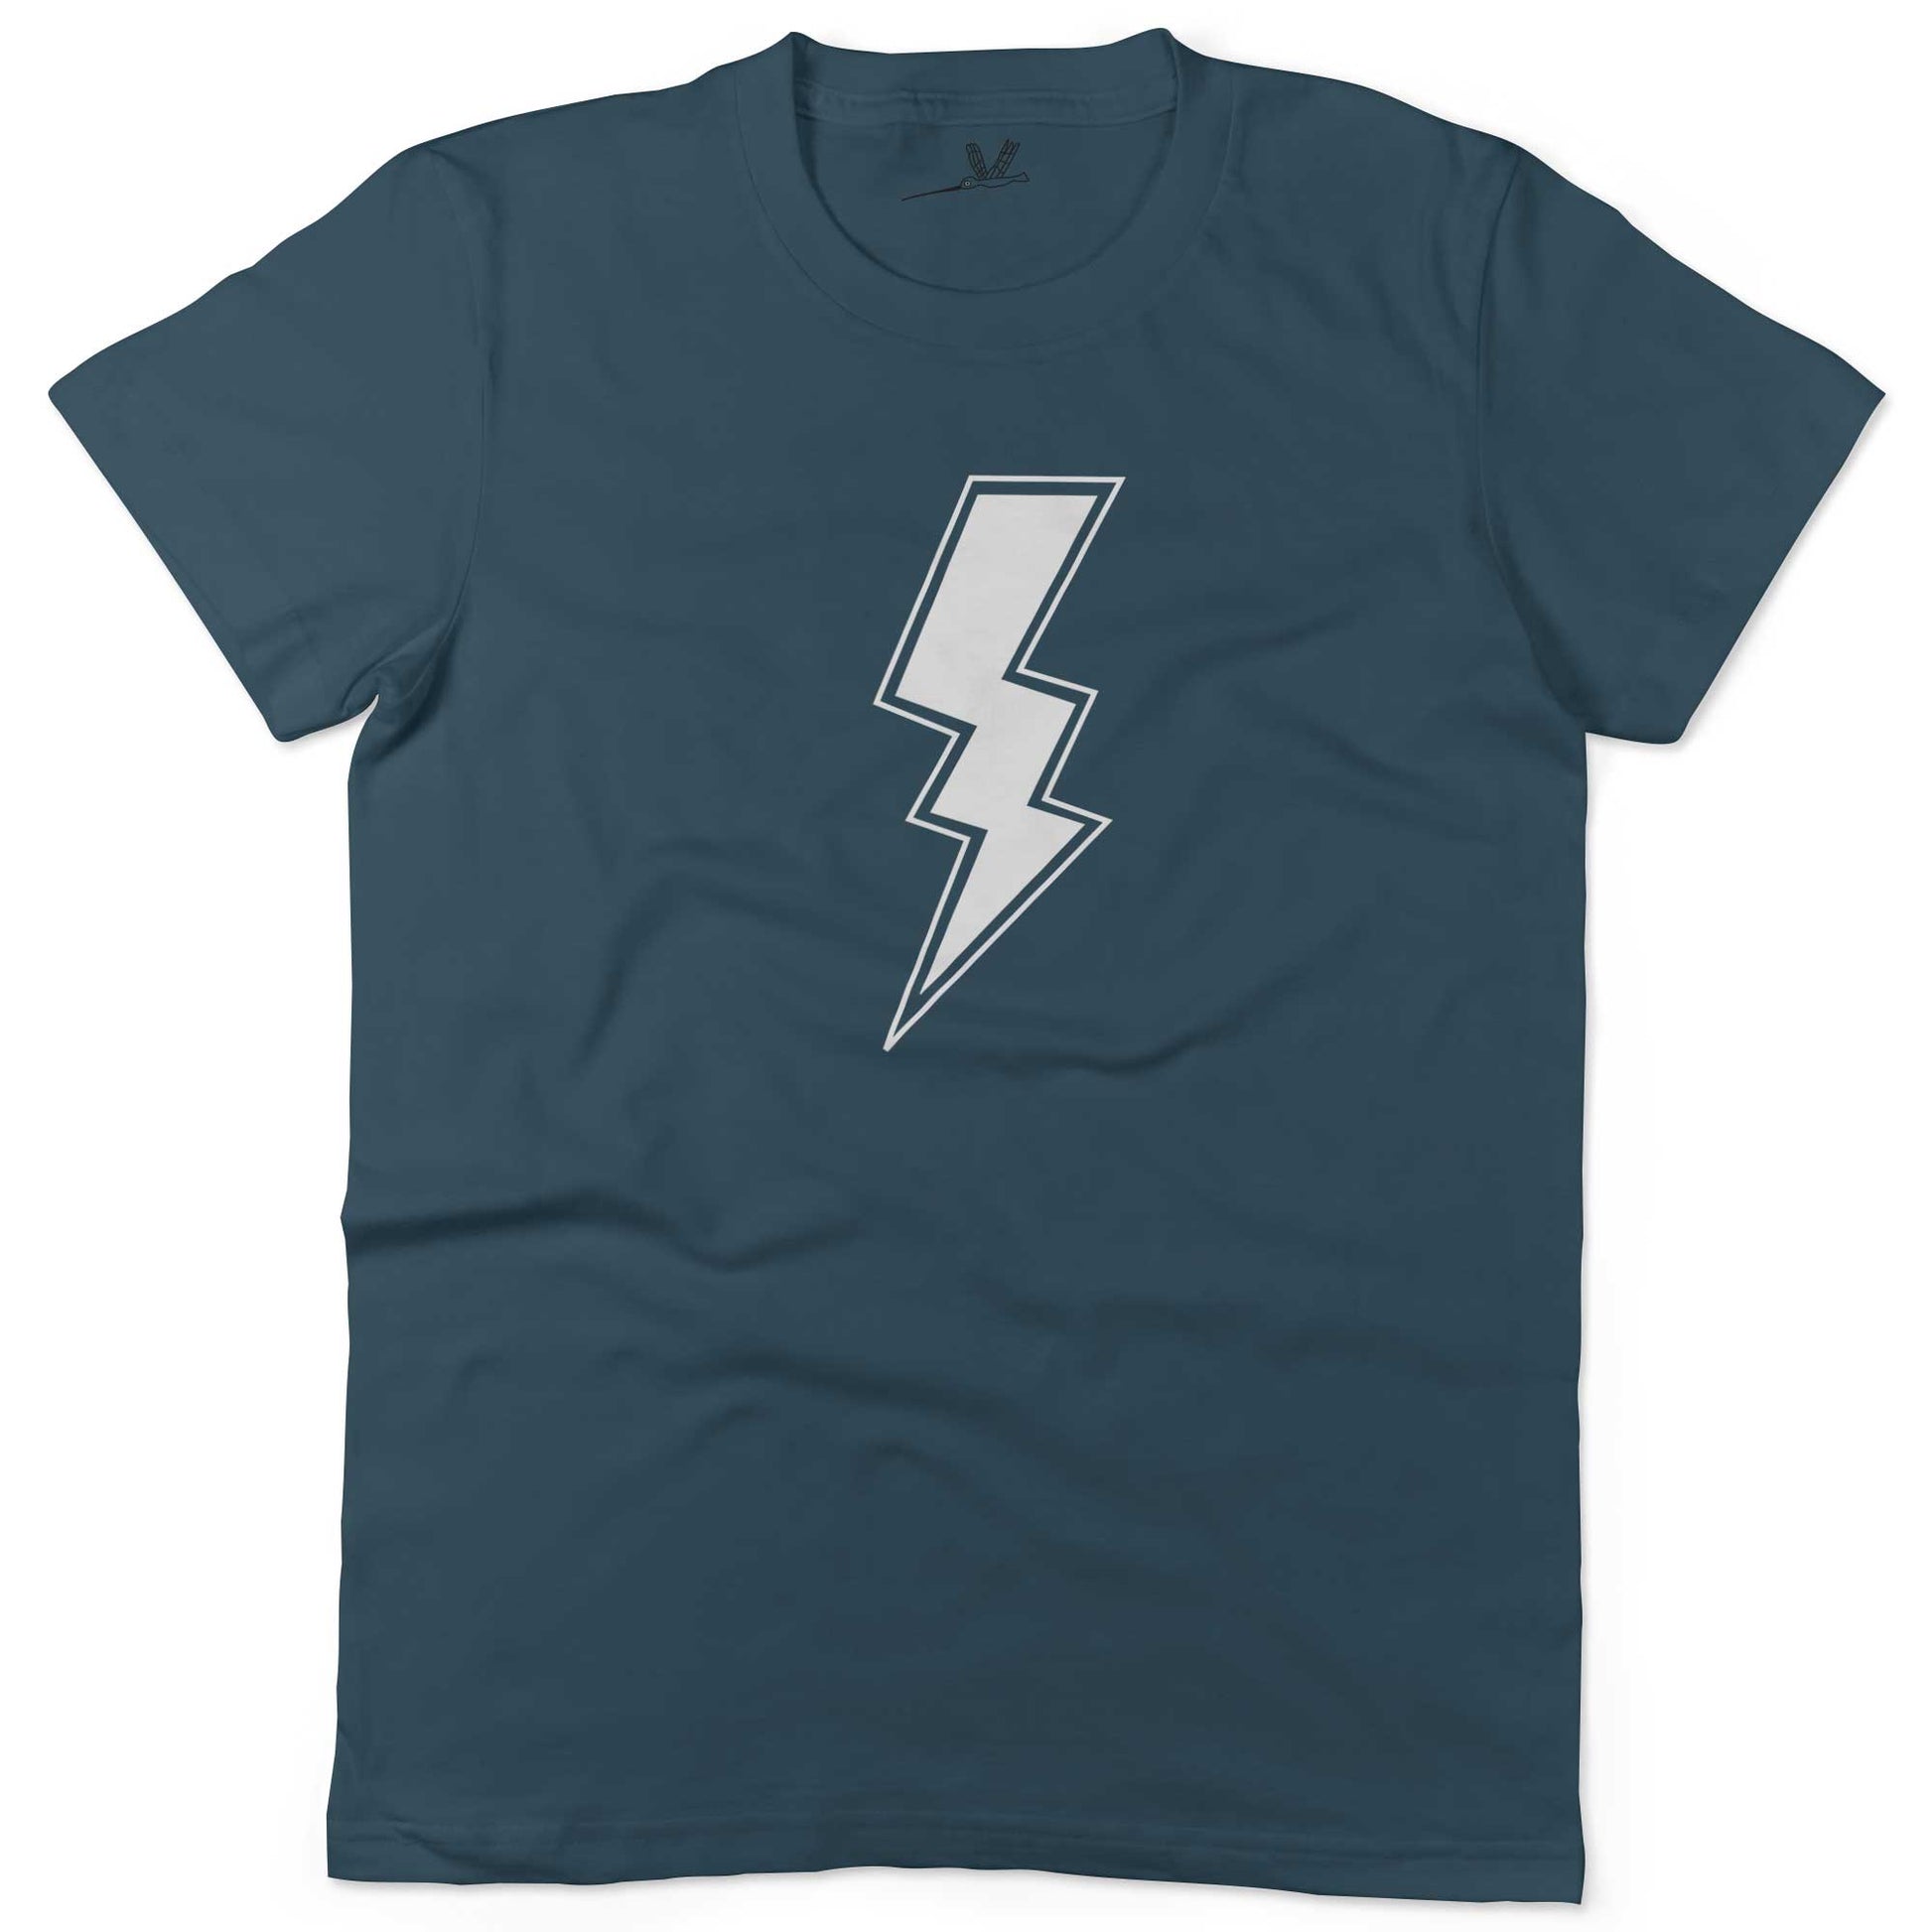 Giant Lightning Bolt Unisex Or Women's Cotton T-shirt-